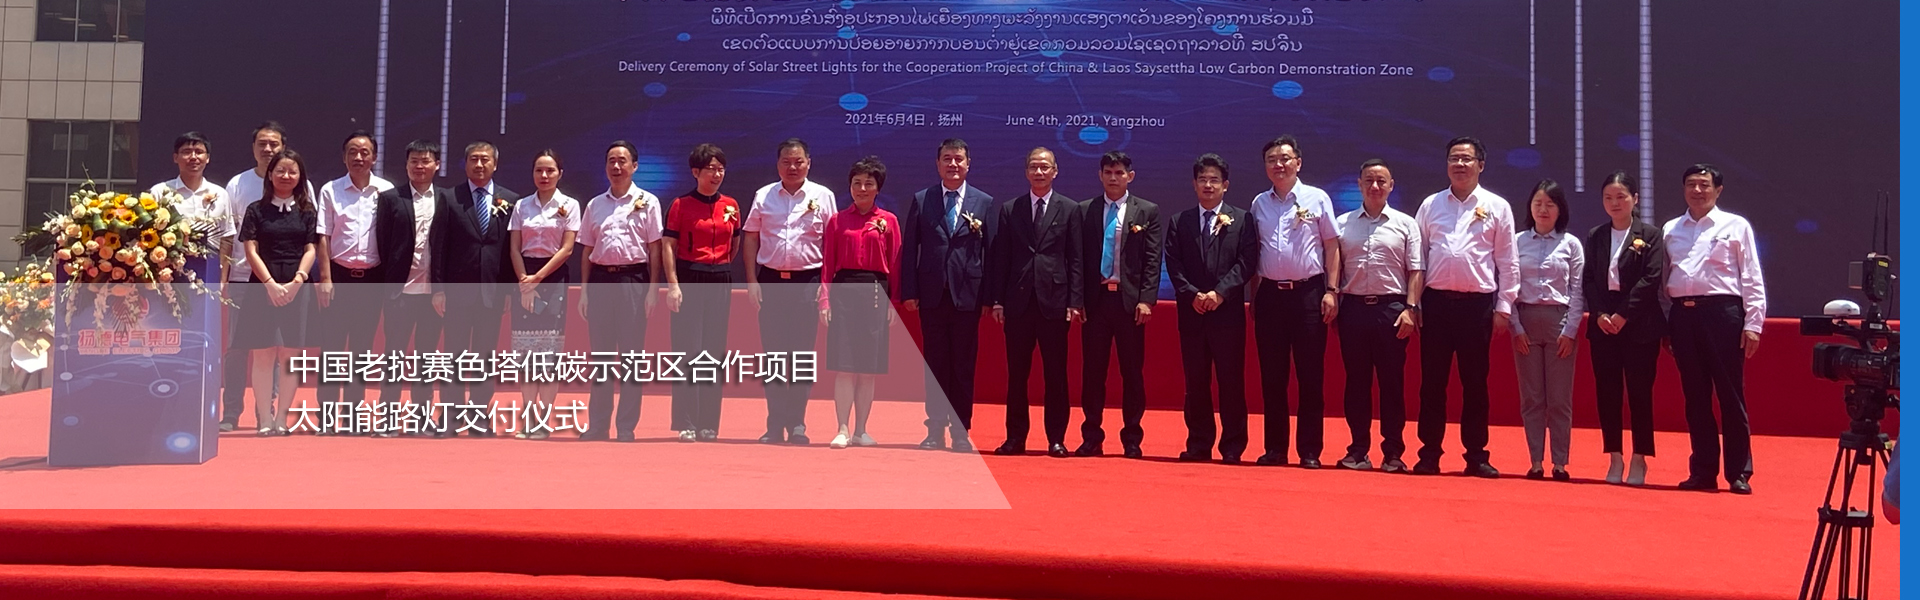 中国老挝赛色塔低碳示范区合作项目